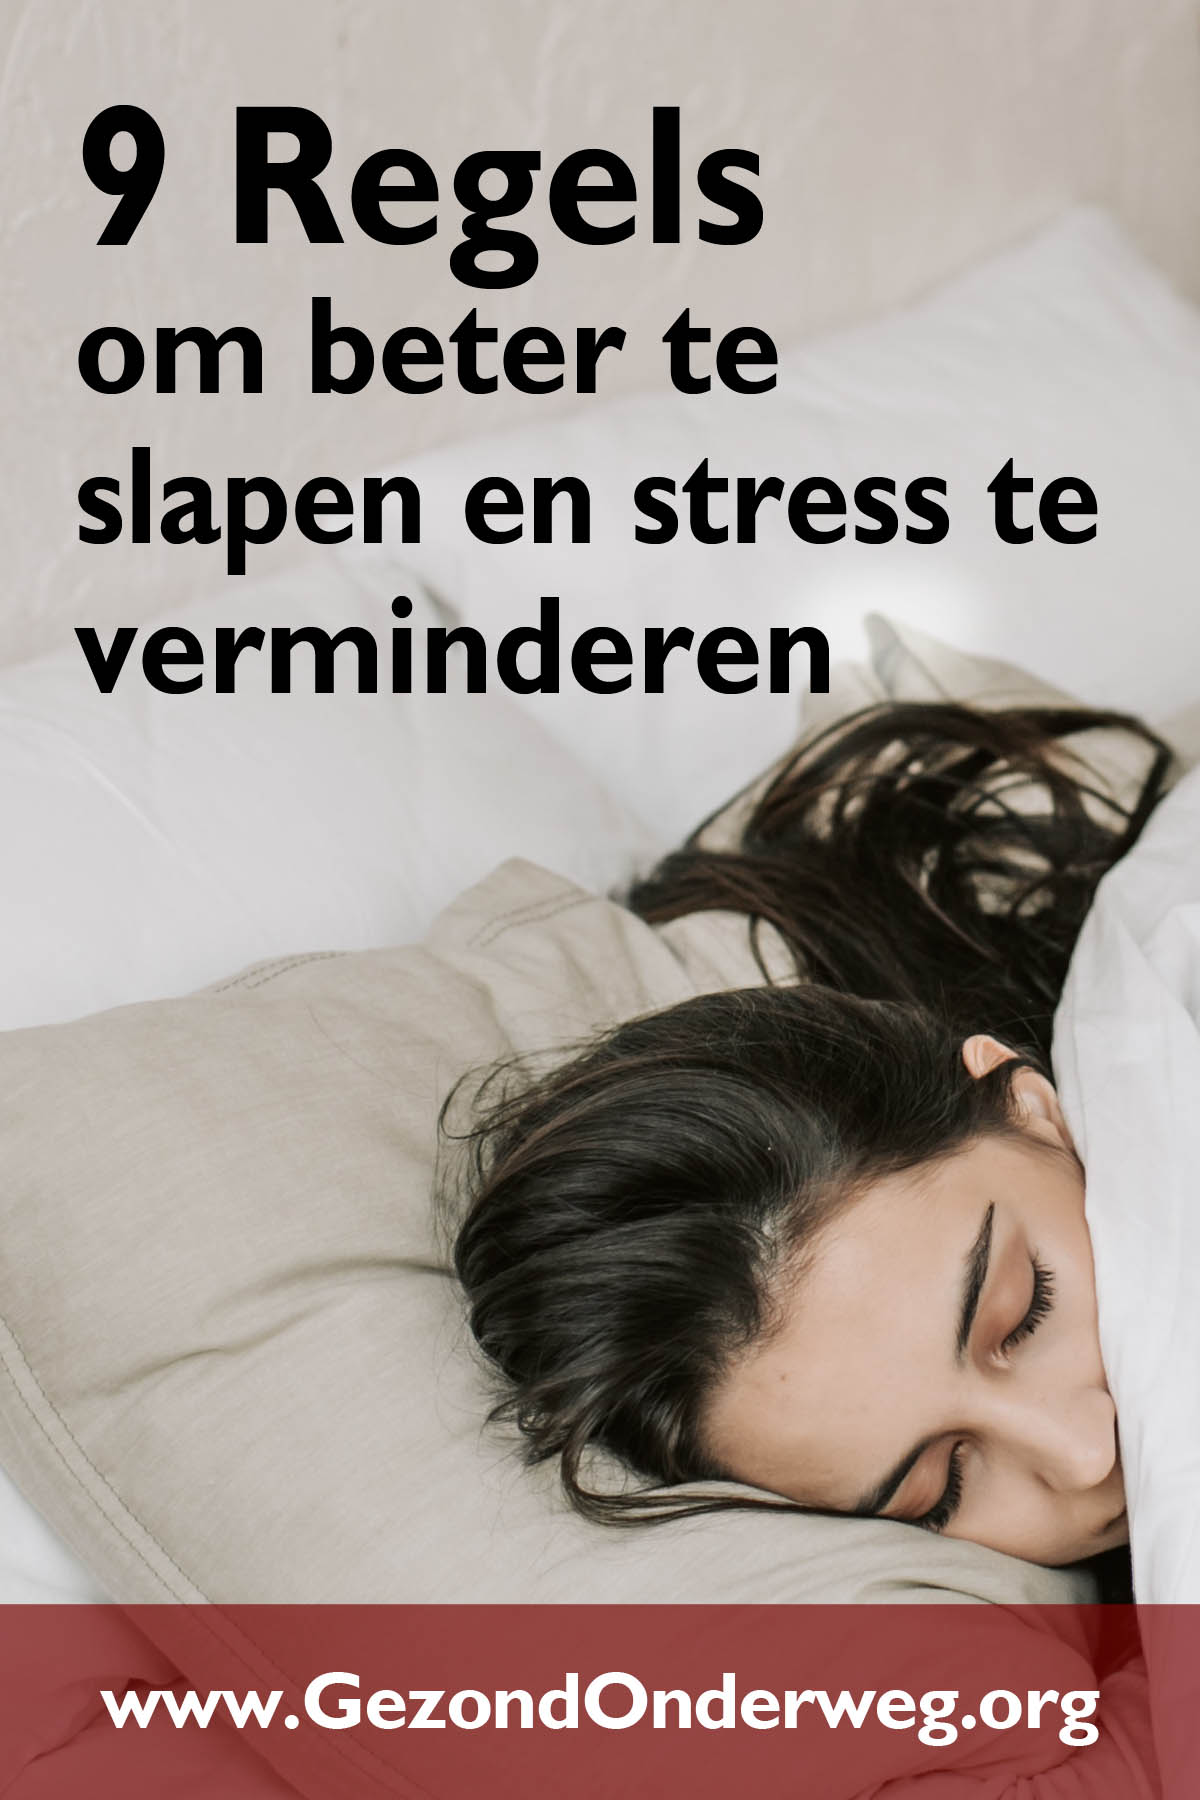 9 Regels om beter te slapen en stress te verminderen